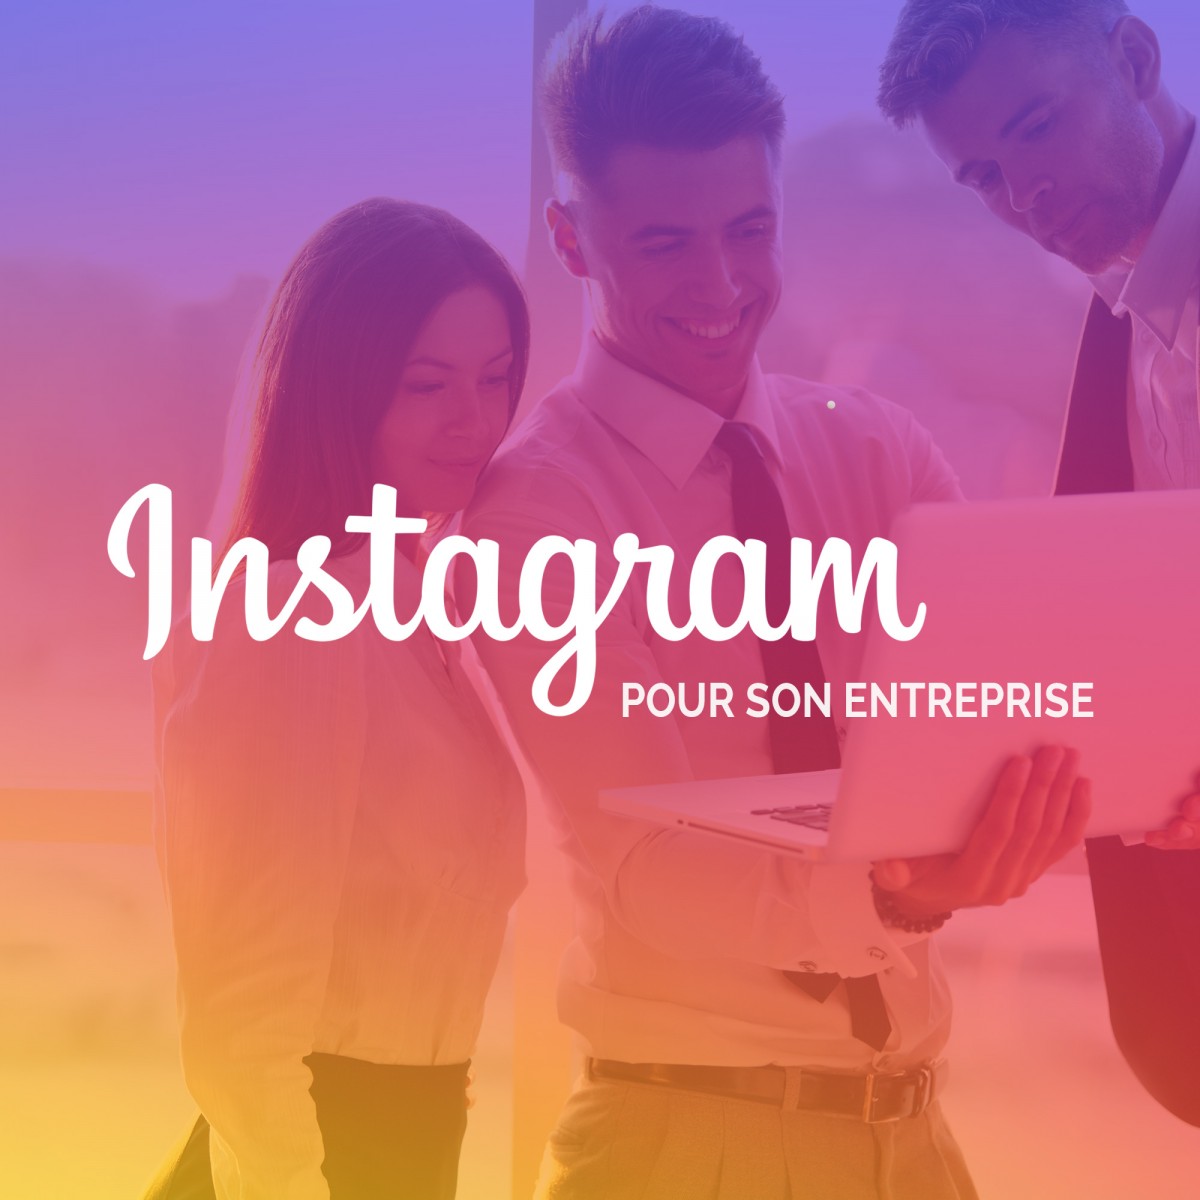 Comment utiliser Instagram pour son entreprise ?